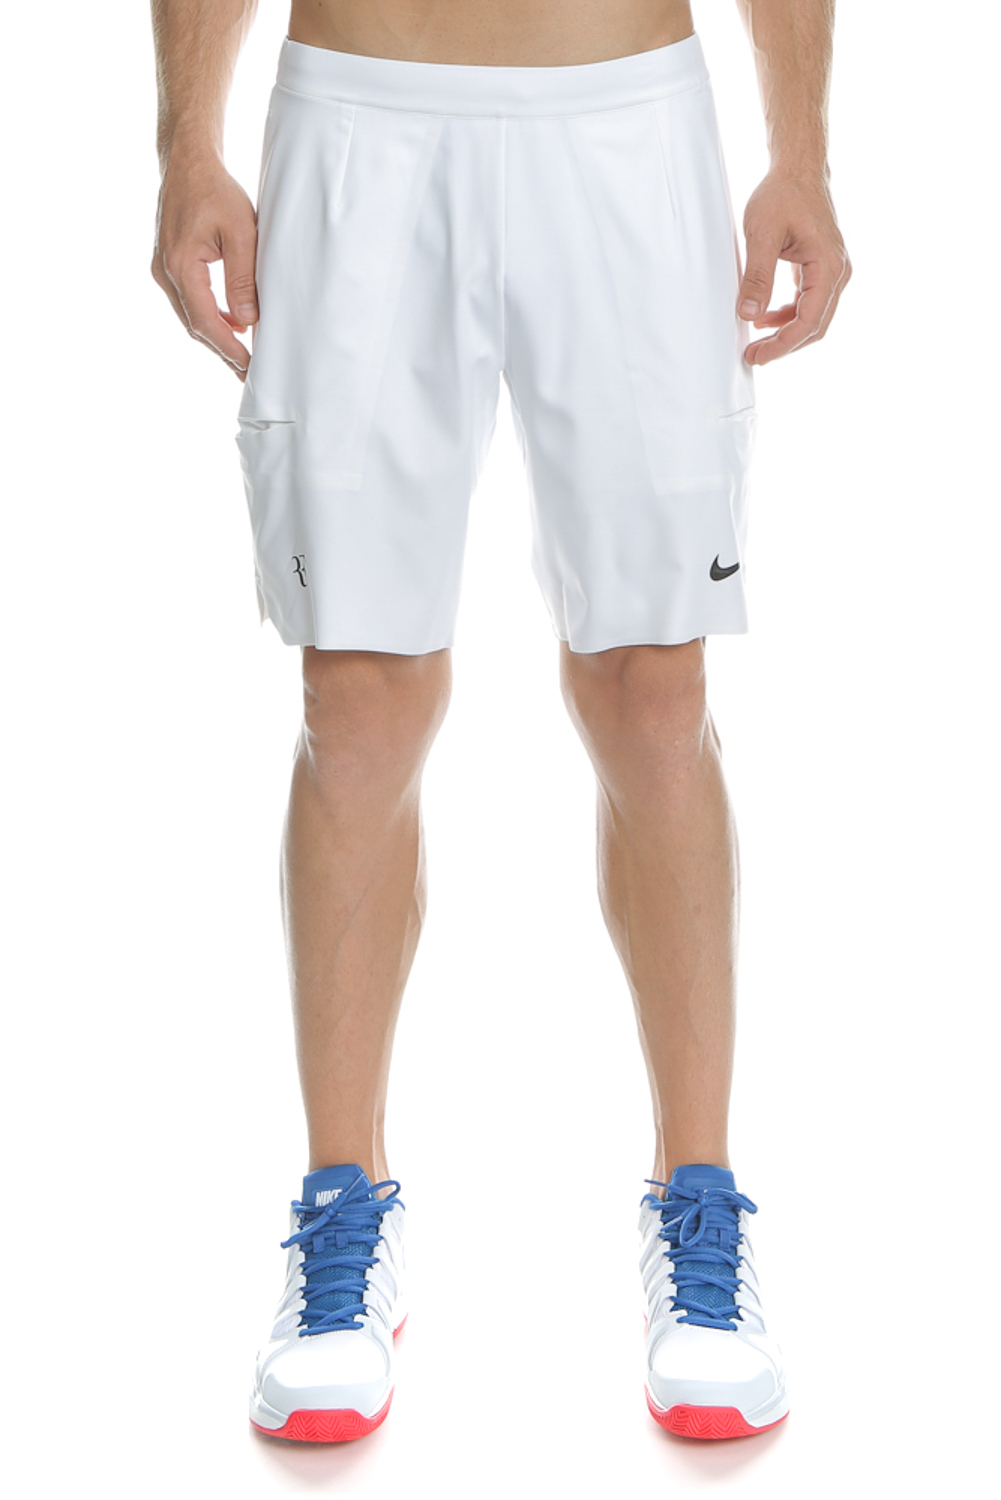 Ανδρικά/Ρούχα/Σορτς-Βερμούδες/Αθλητικά NIKE - Ανδρικό σορτς τένις Nike KCT FLX ACE λευκό